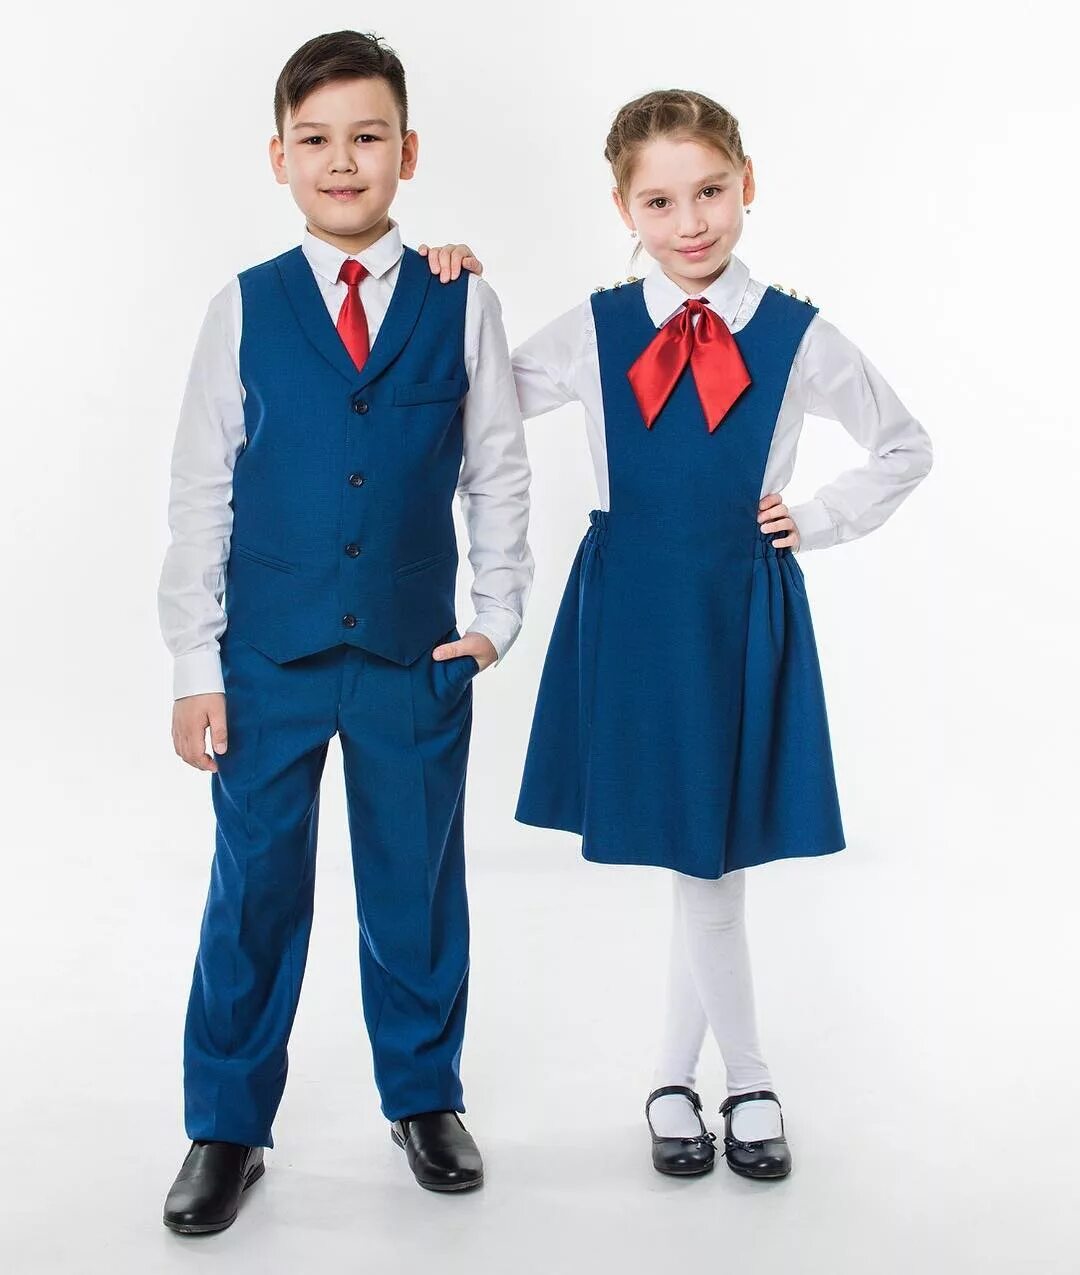 Купить одежду для школы. Tashi School Школьная форма. Современная Школьная форма. Школьная одежда для мальчиков. Мальчик и девочка в школьной форме.